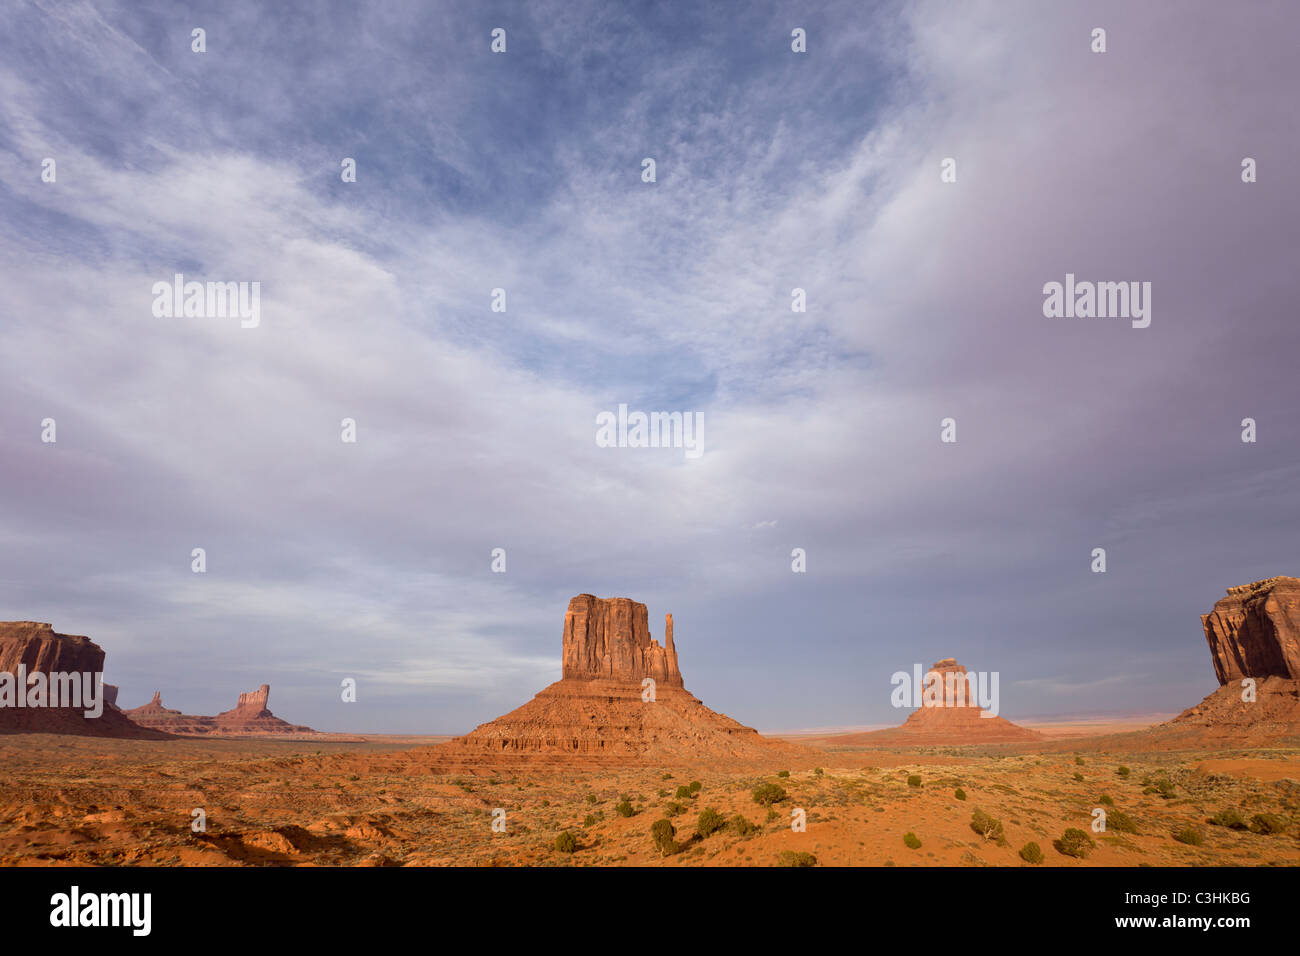 Monument Valley Navajo Tribal Park die Grenze zwischen Arizona und Utah in den Südwesten der USA erstreckt. Stockfoto